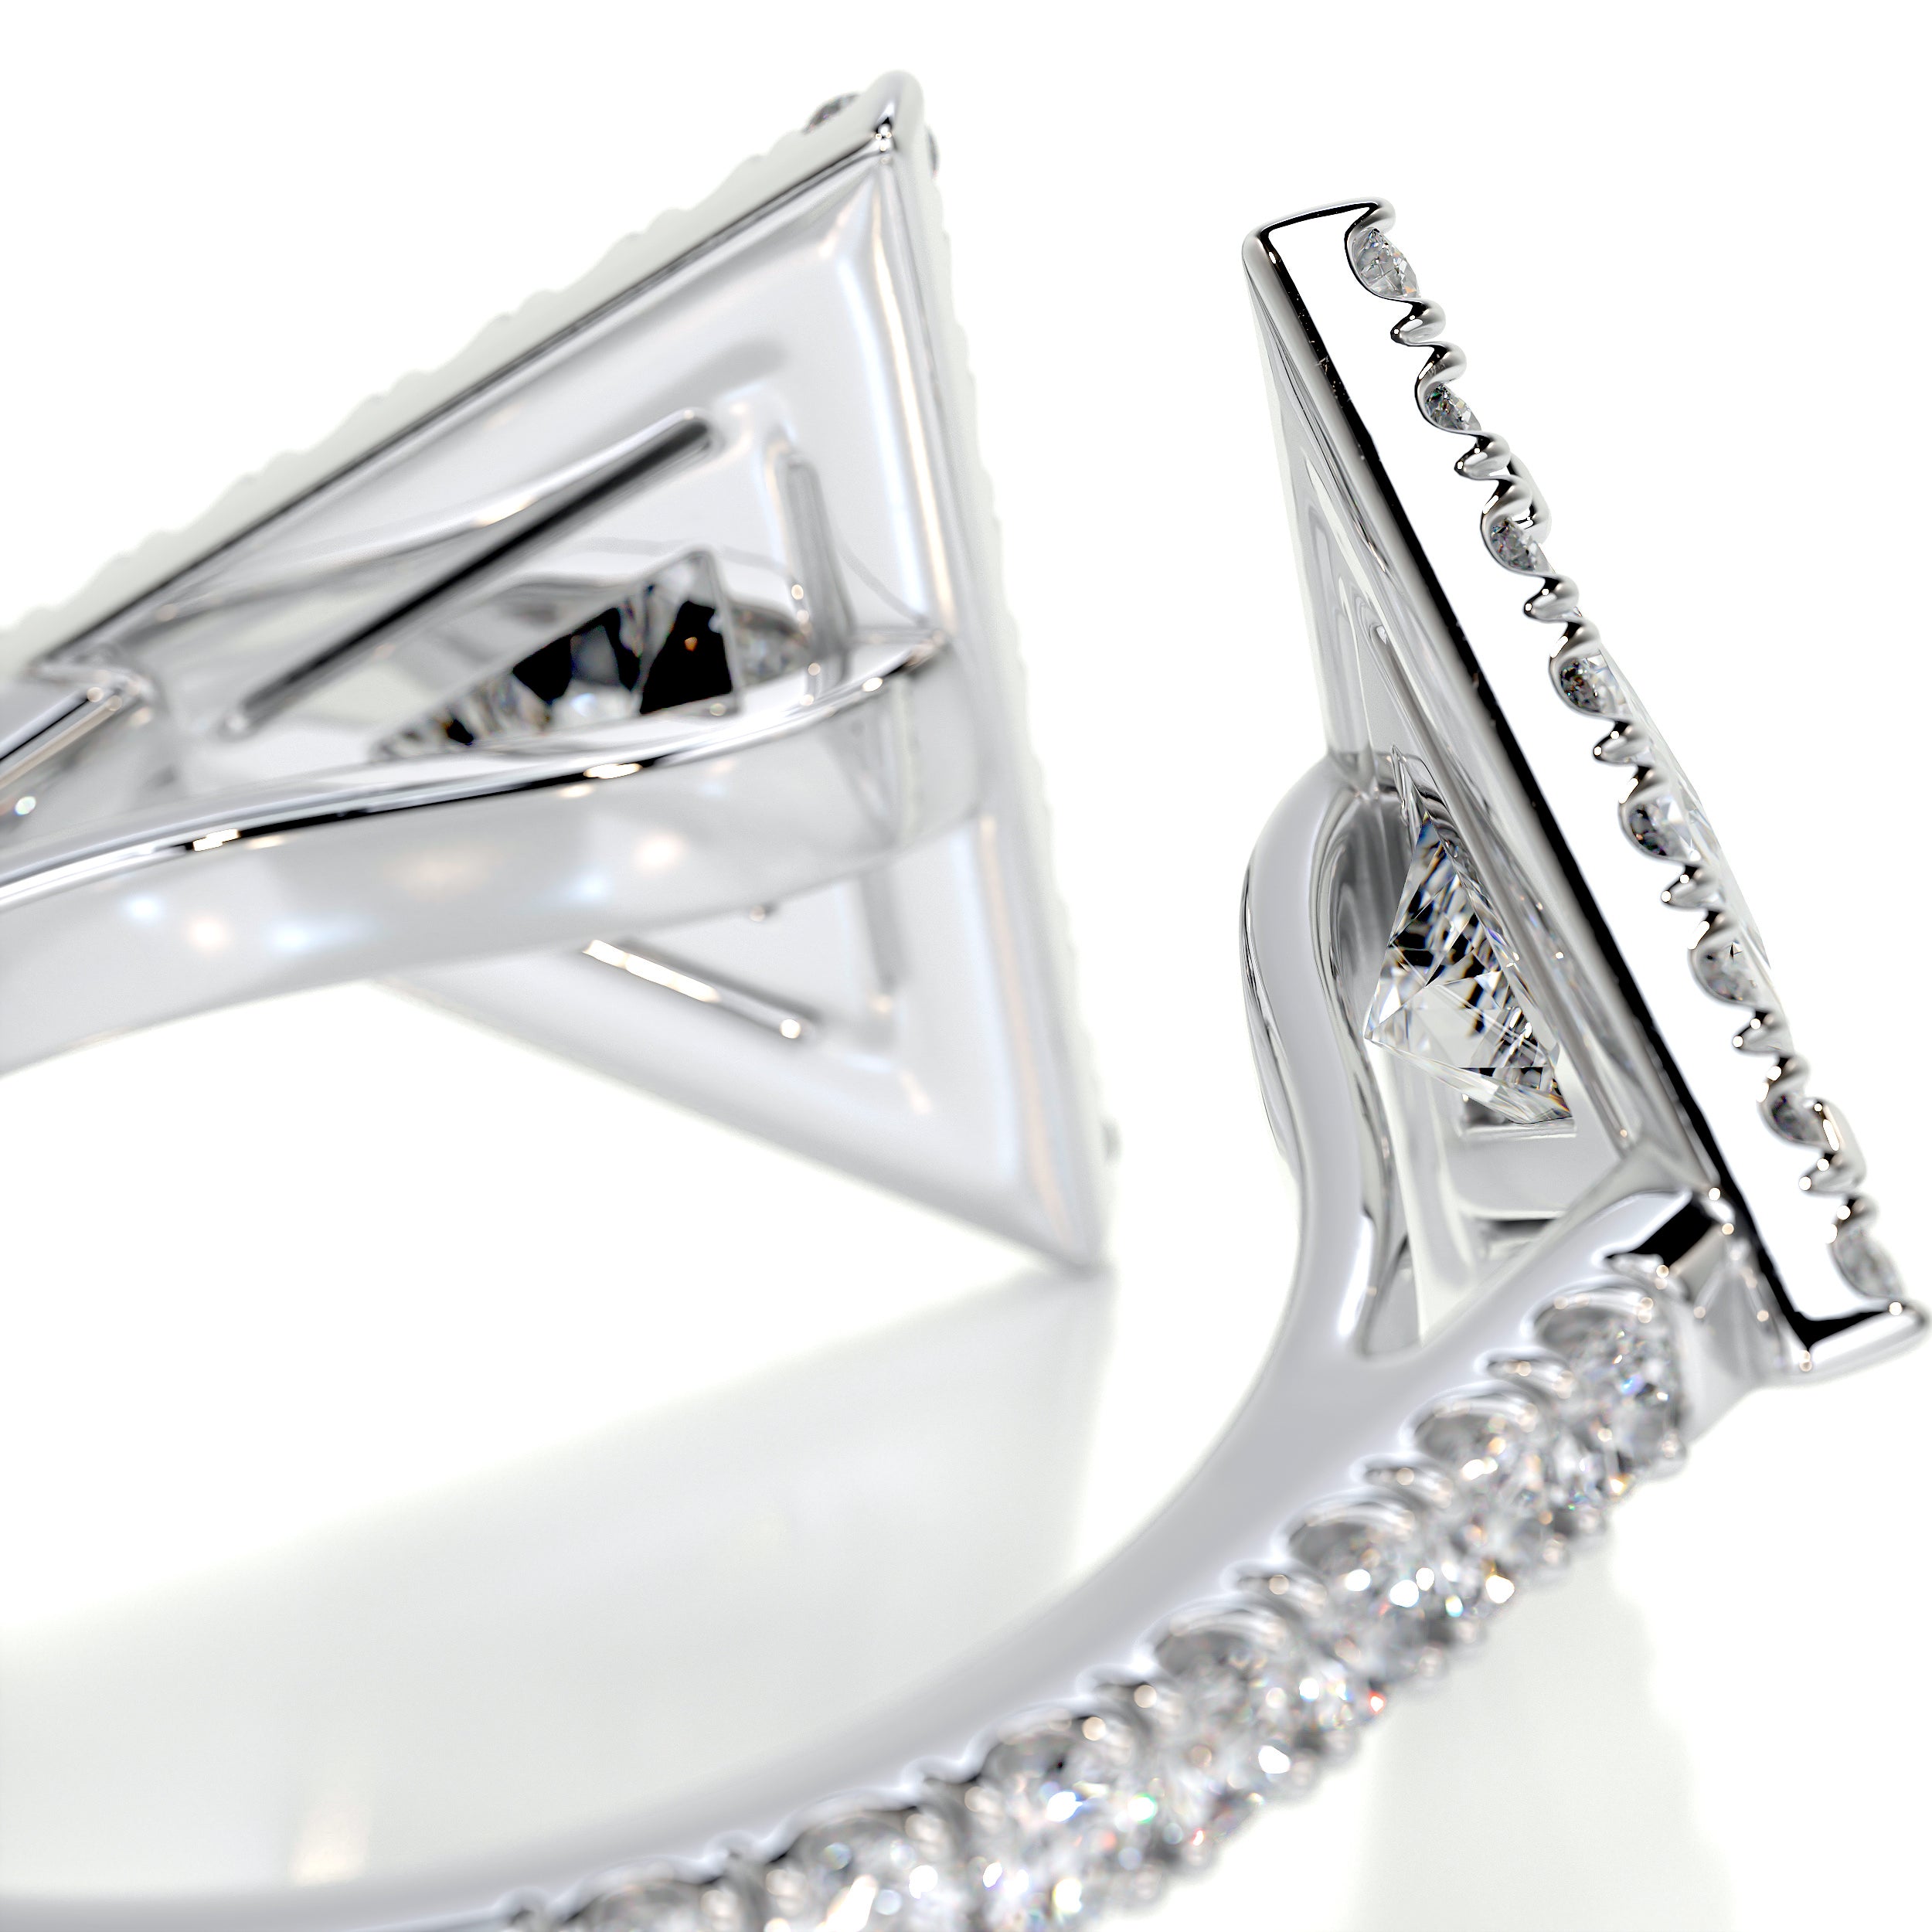 Jade Fashion Diamond Ring   (1.5 carat) -14K White Gold